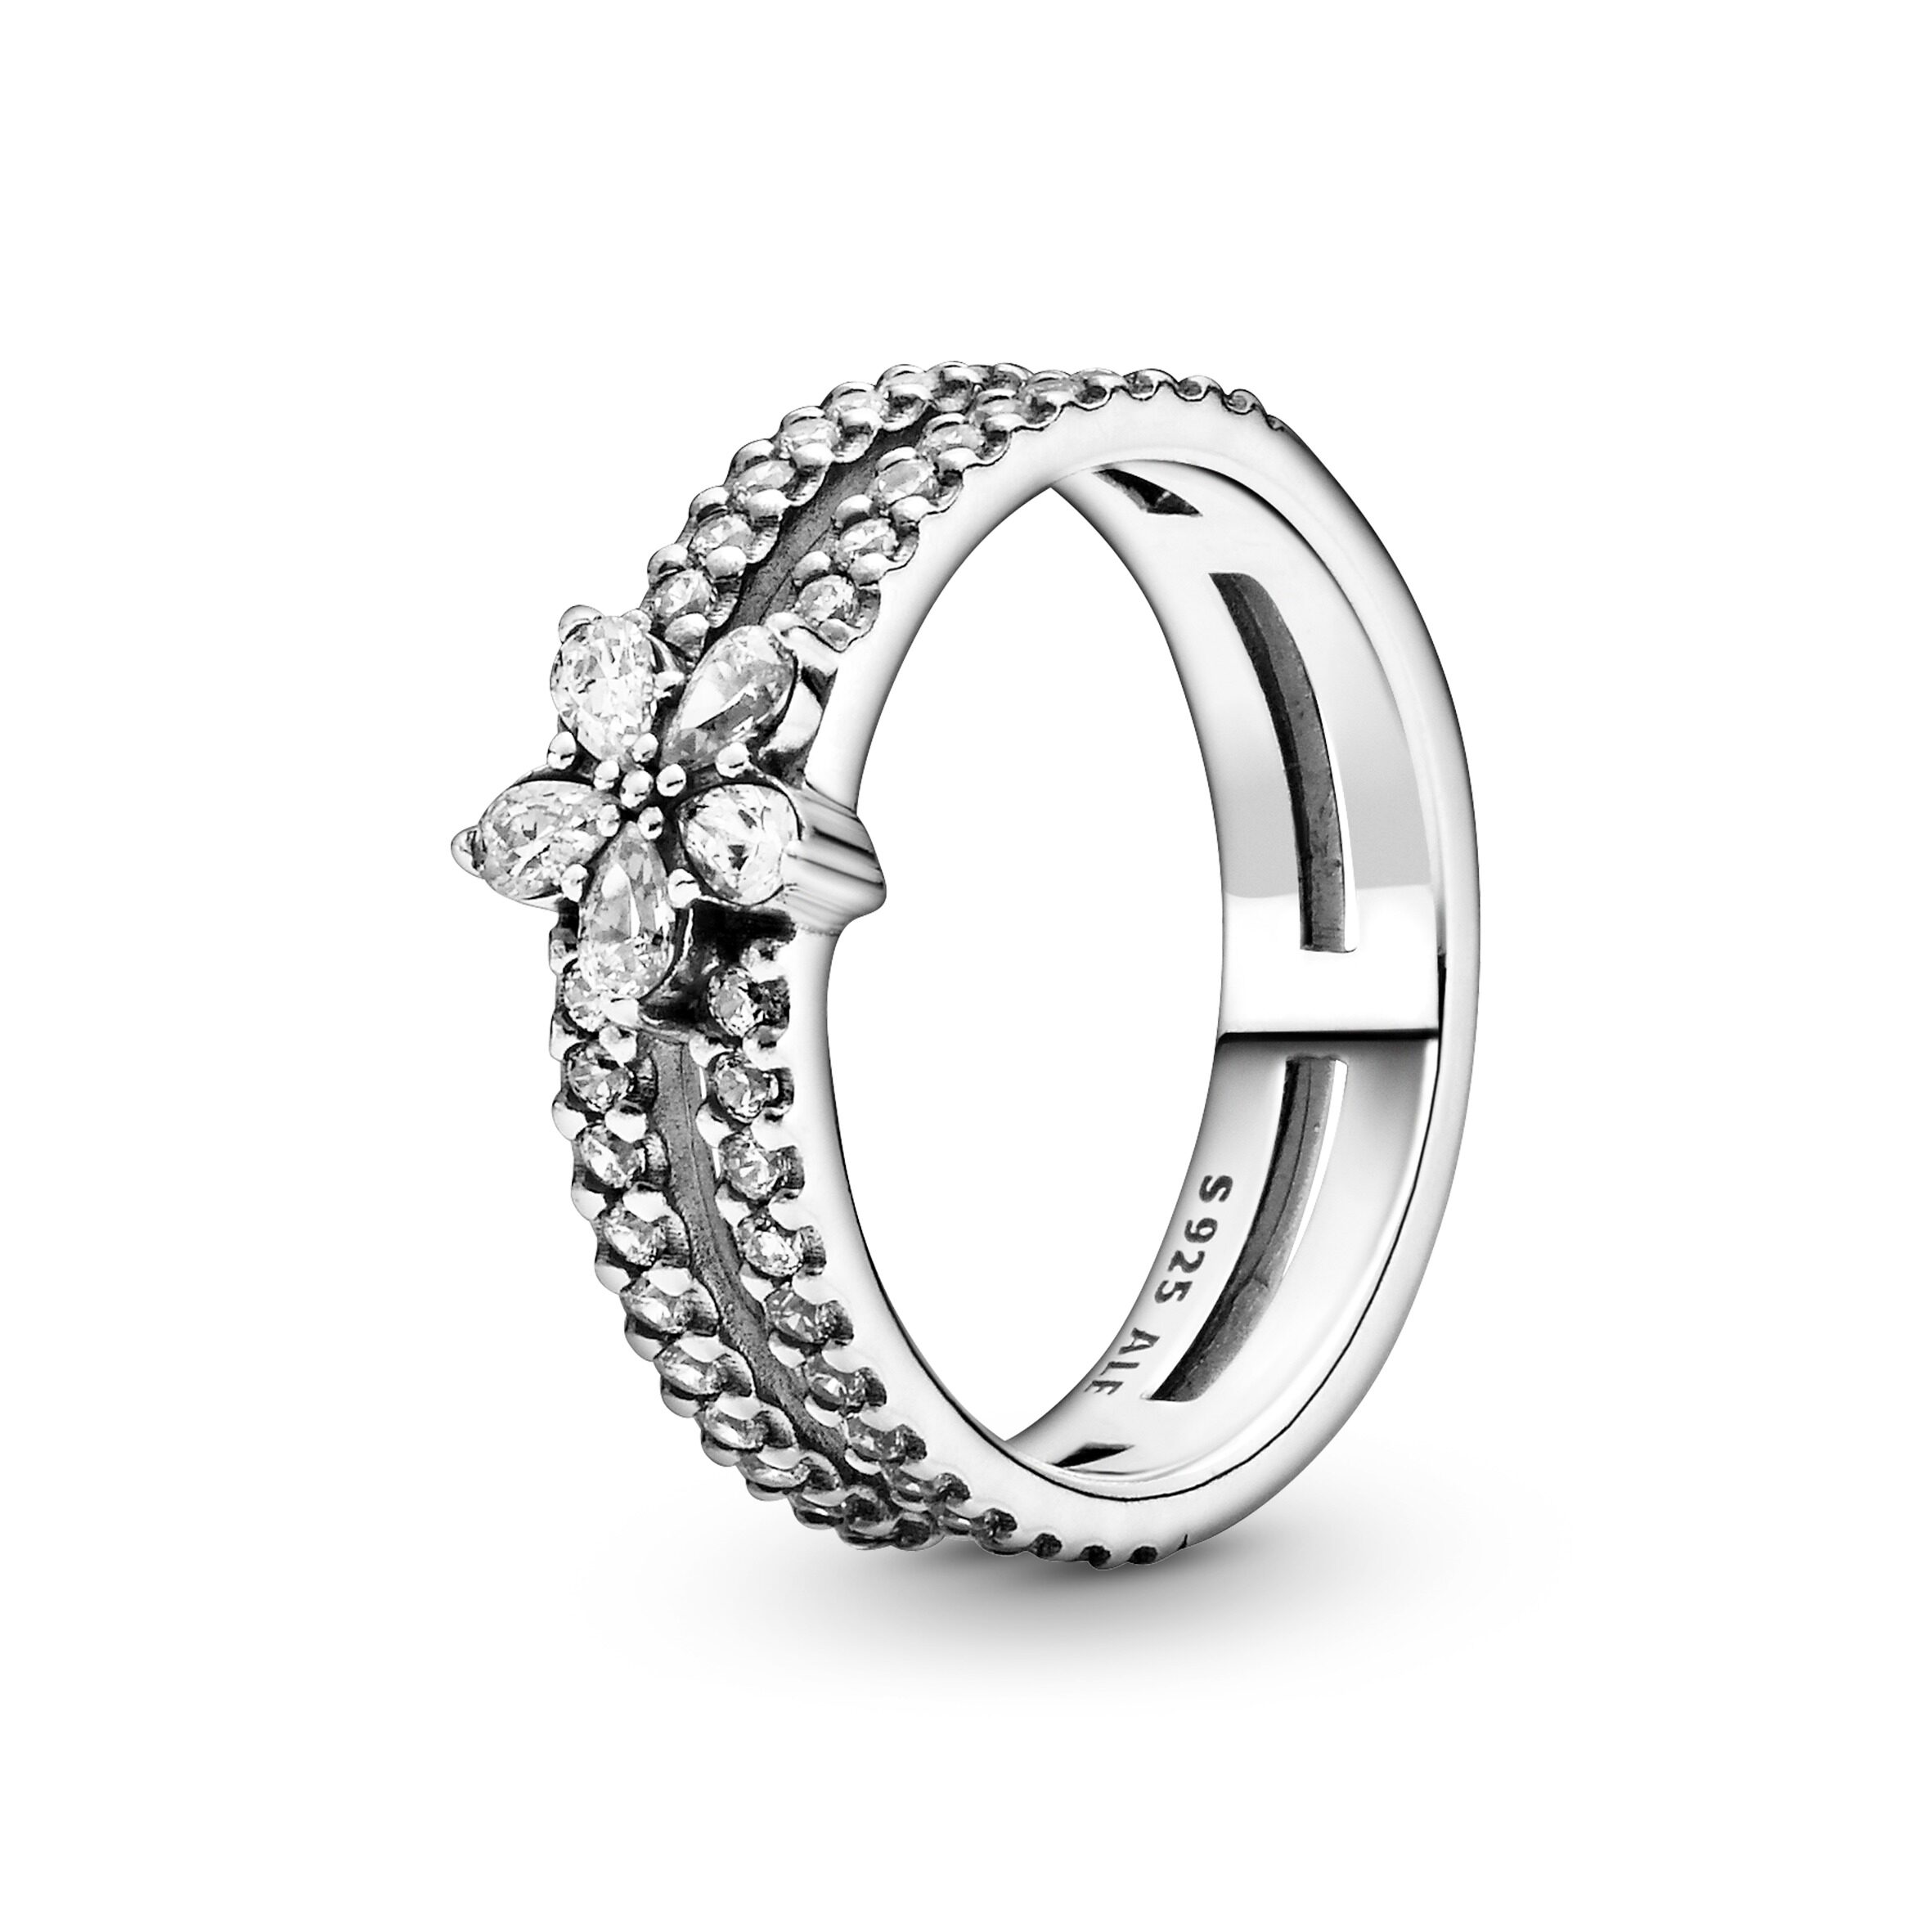 相連的雙戒環設計配以閃爍星形雪花點綴，戒環上更鑲有大小不一的透